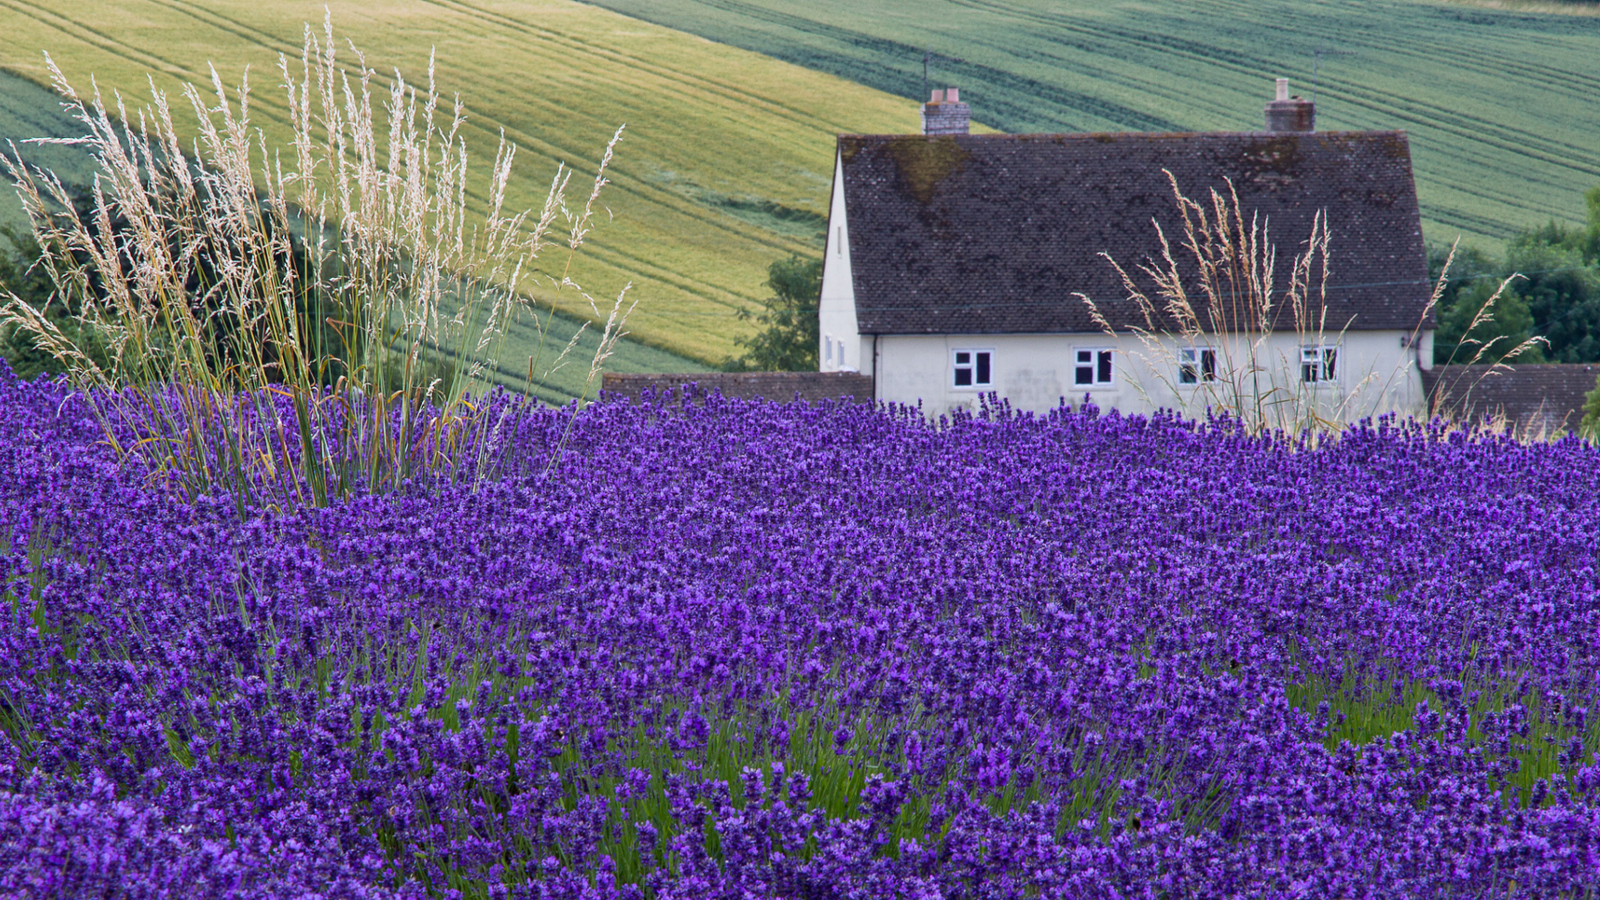 House In Lavender Field wallpaper 1600x900